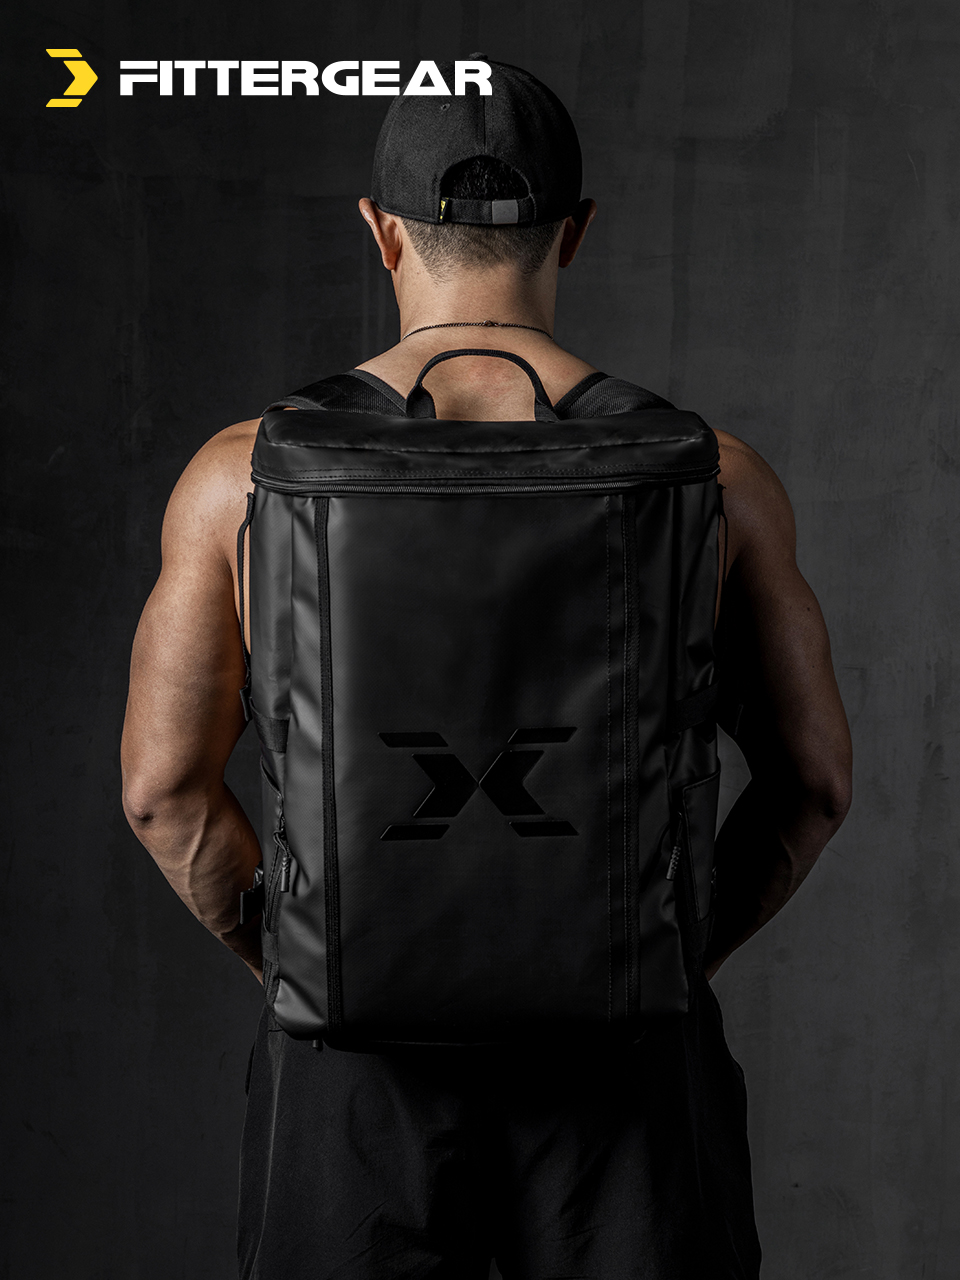 Z. Gym Bag v2 (Backpack)